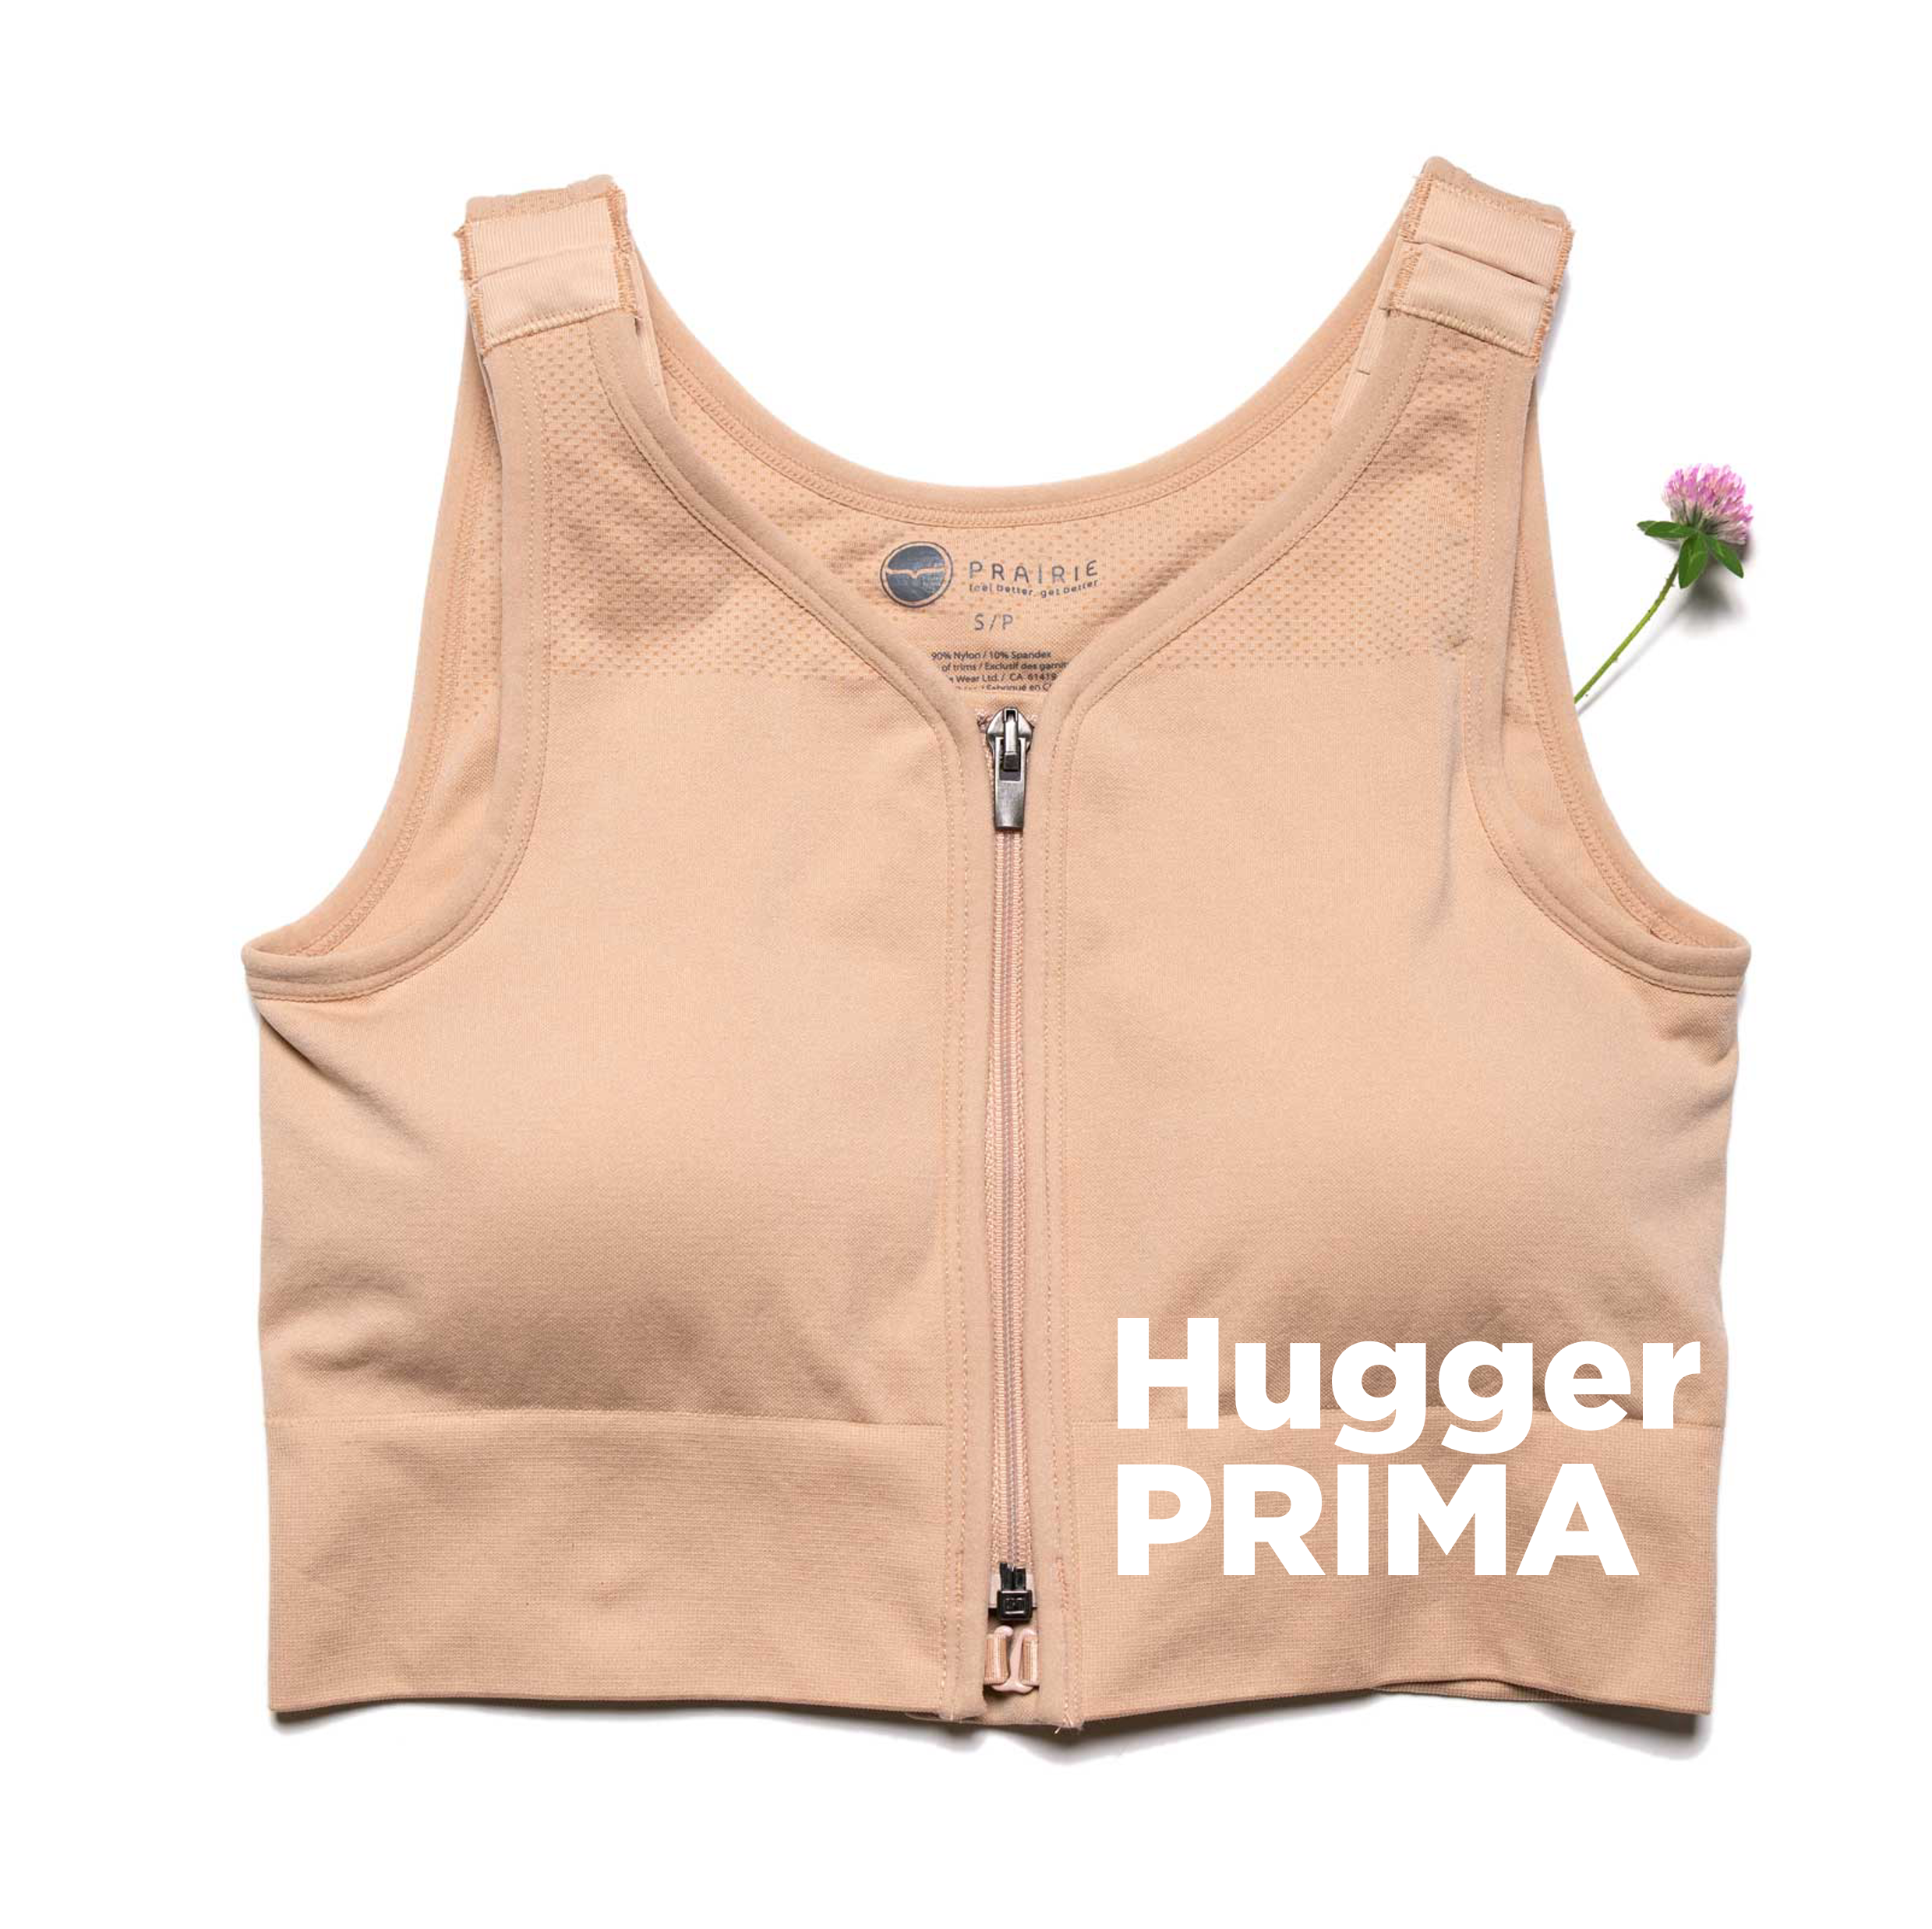 Hugger Prima Bra  Body Works Compression